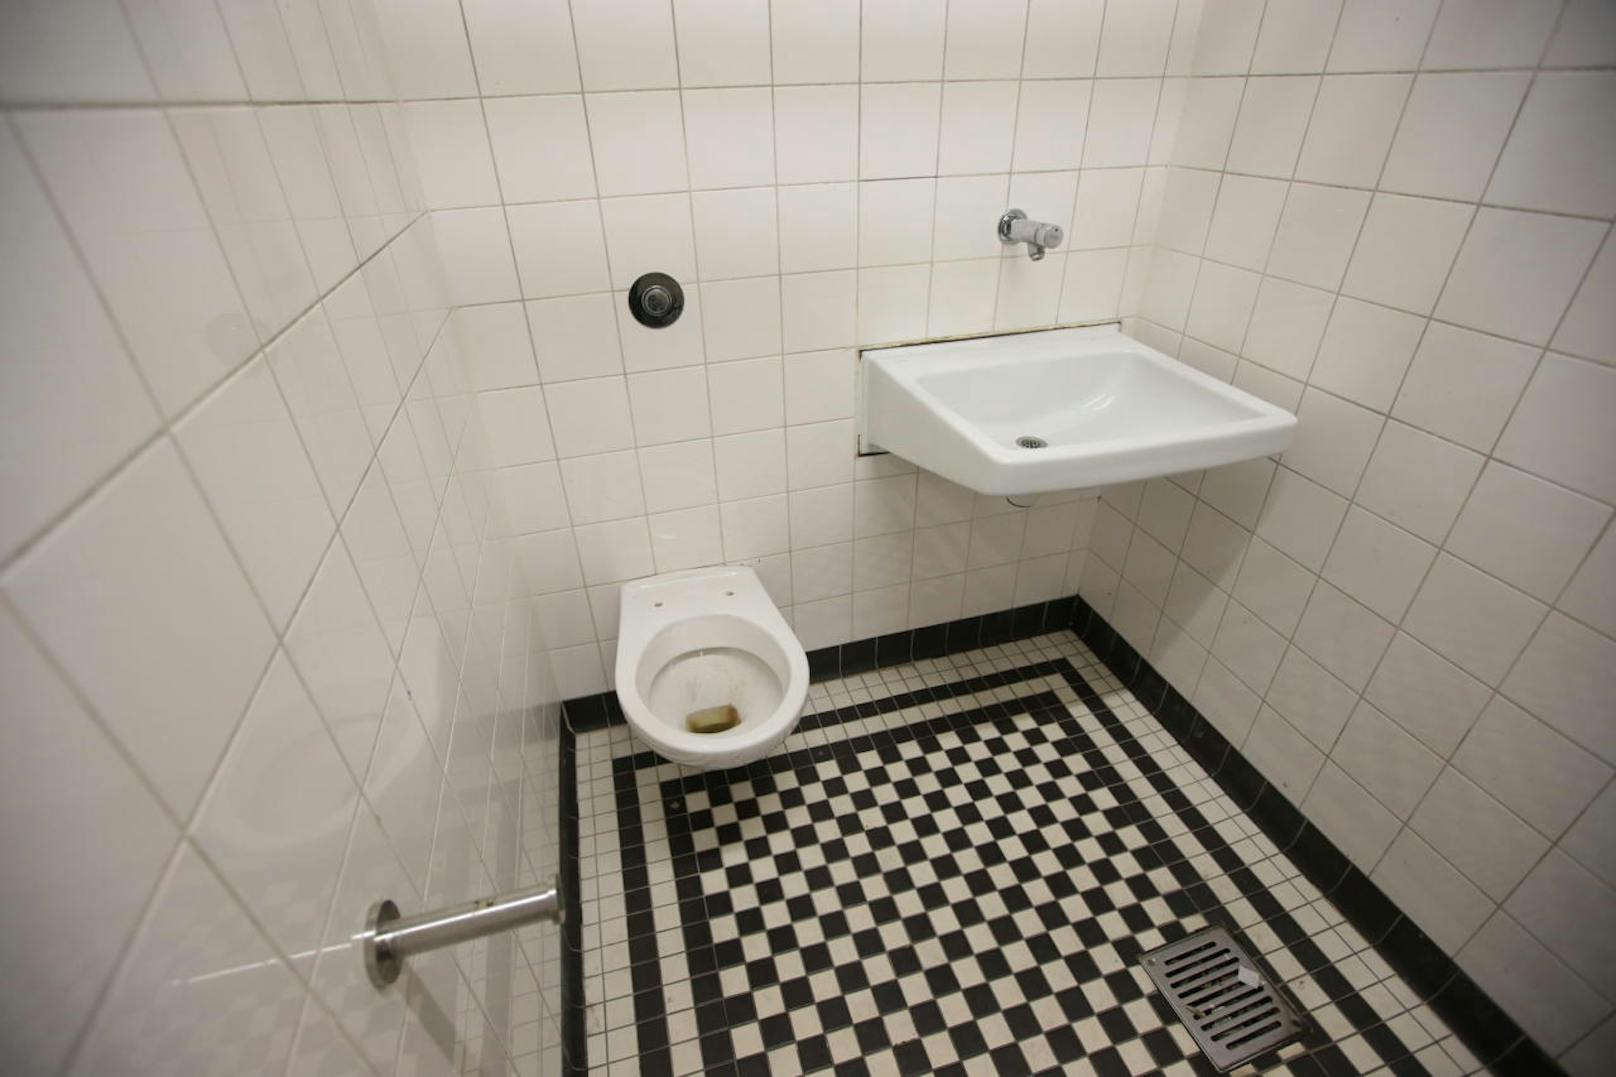 Die WC-Anlagen in den U-Bahn-Stationen sollen erneuert werden.